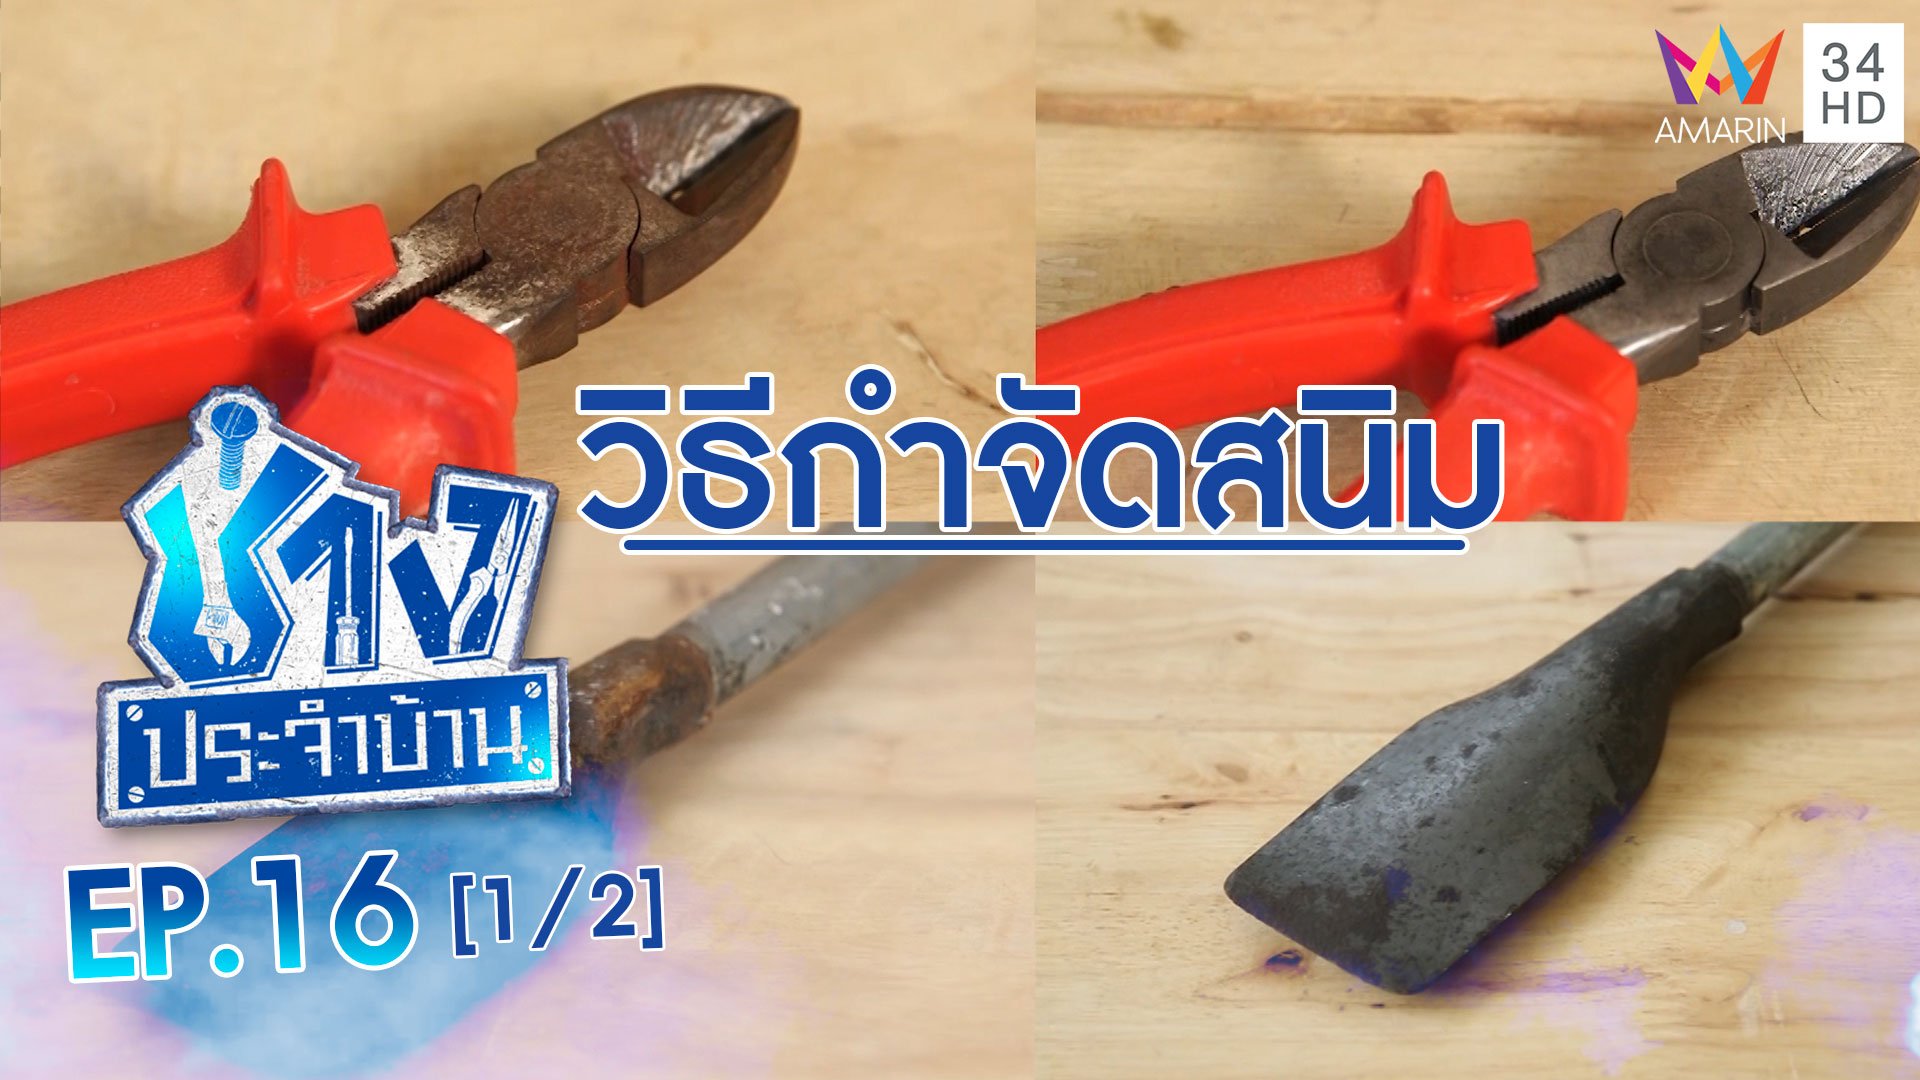 ช่างประจำบ้าน | EP.16 วิธีทำความสะอาดอุปกรณ์ช่างที่เกิดสนิม (1/2) | 16 พ.ค. 63 | AMARIN TVHD34